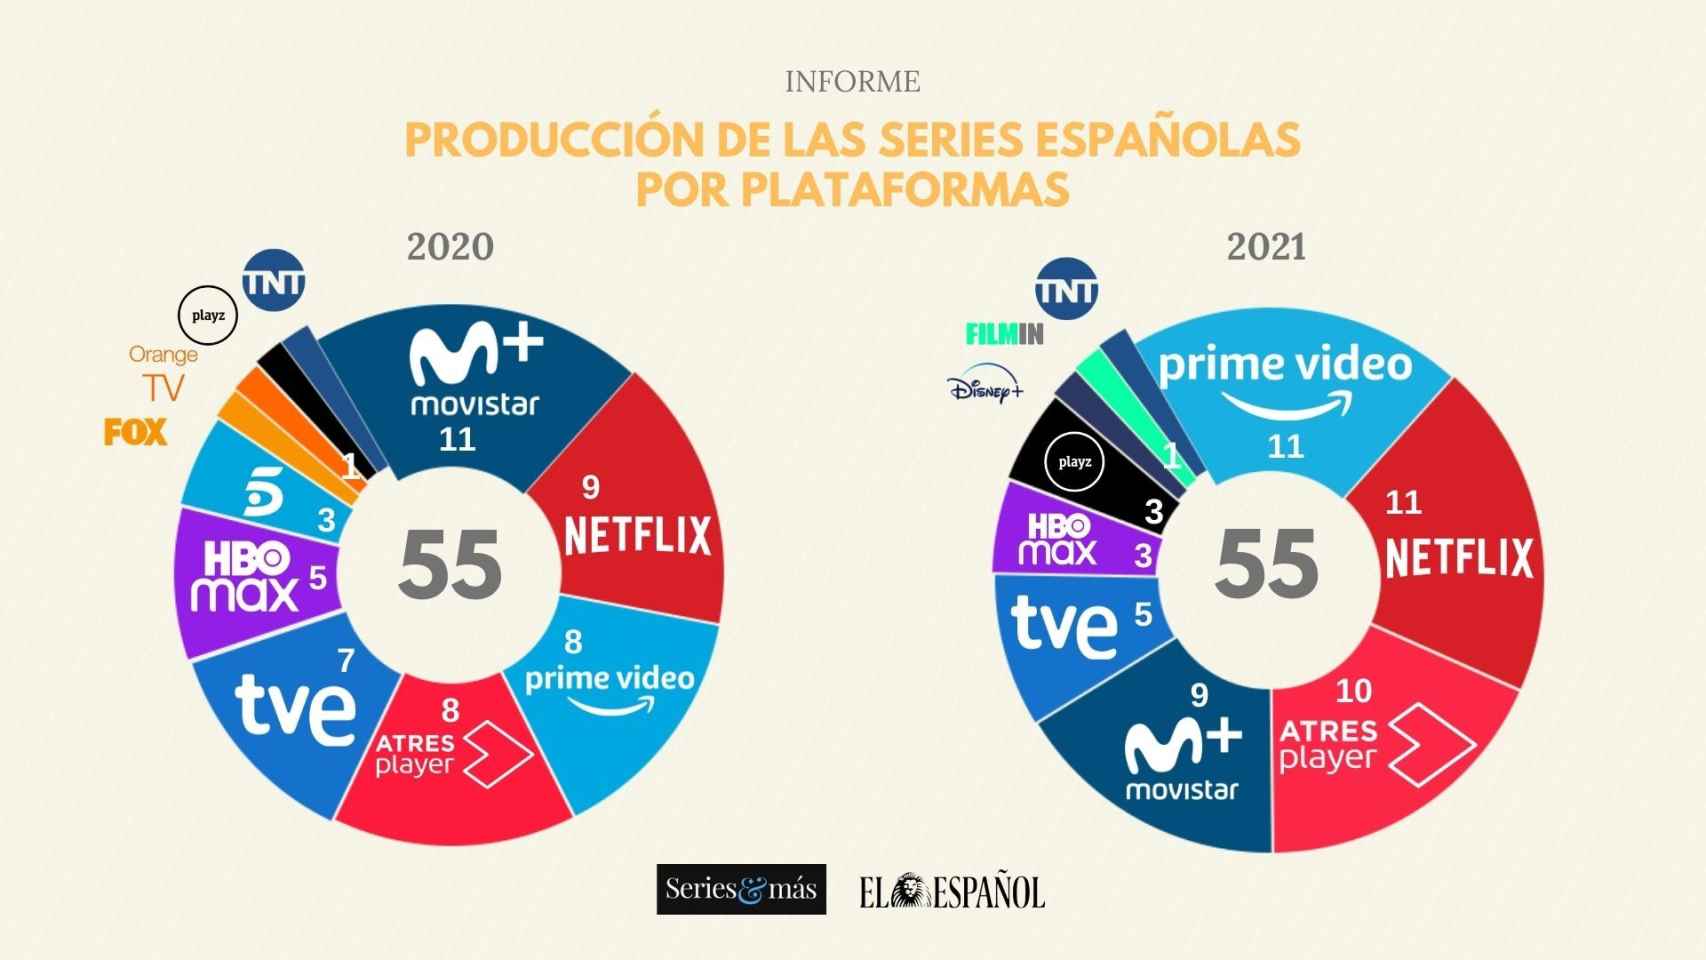 Informe de producción de las series españolas durante 2020 y 2021 por plataformas.